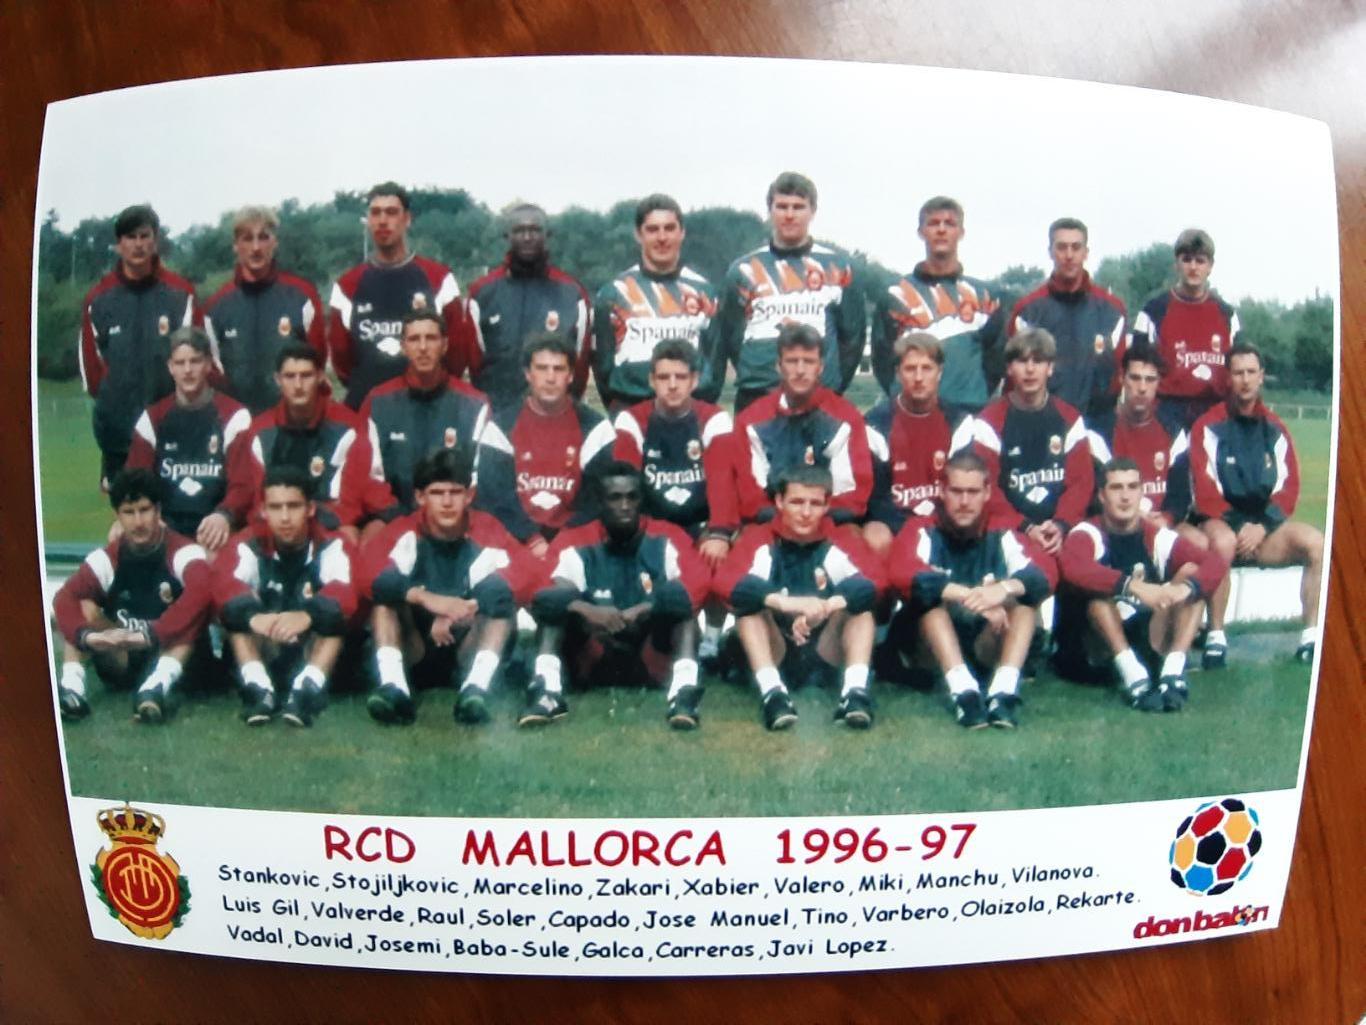 RCD MALLORCA 1996/97 (SPAIN)